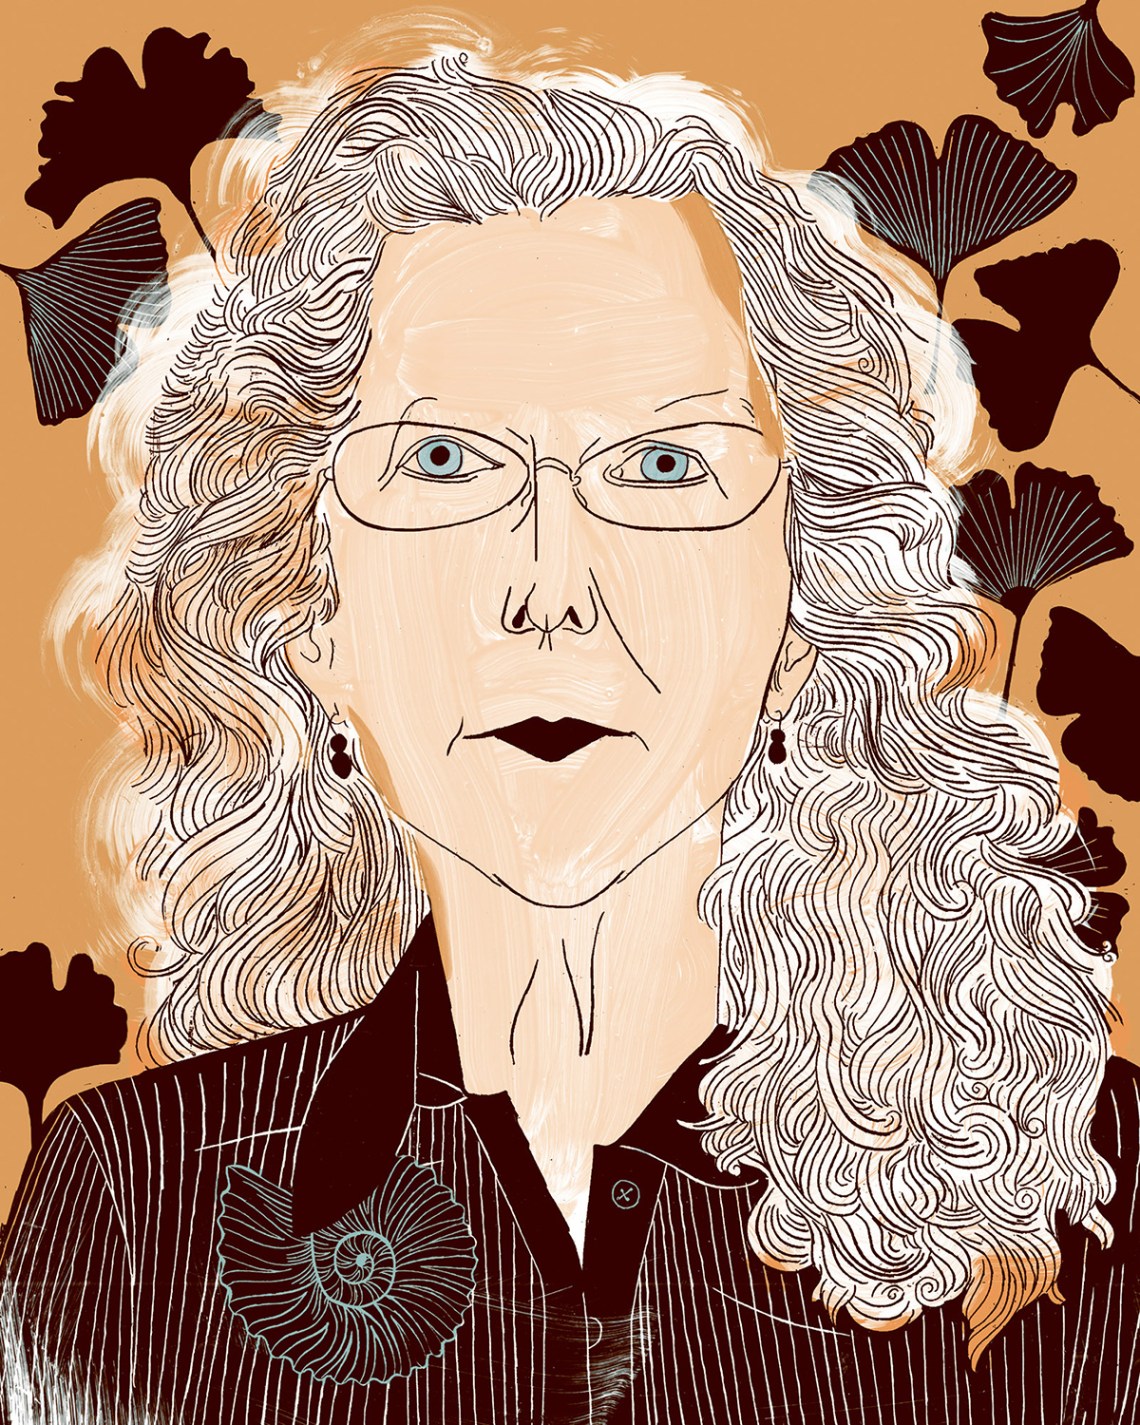 Andrea Barrett; illustration by Romy Blümel